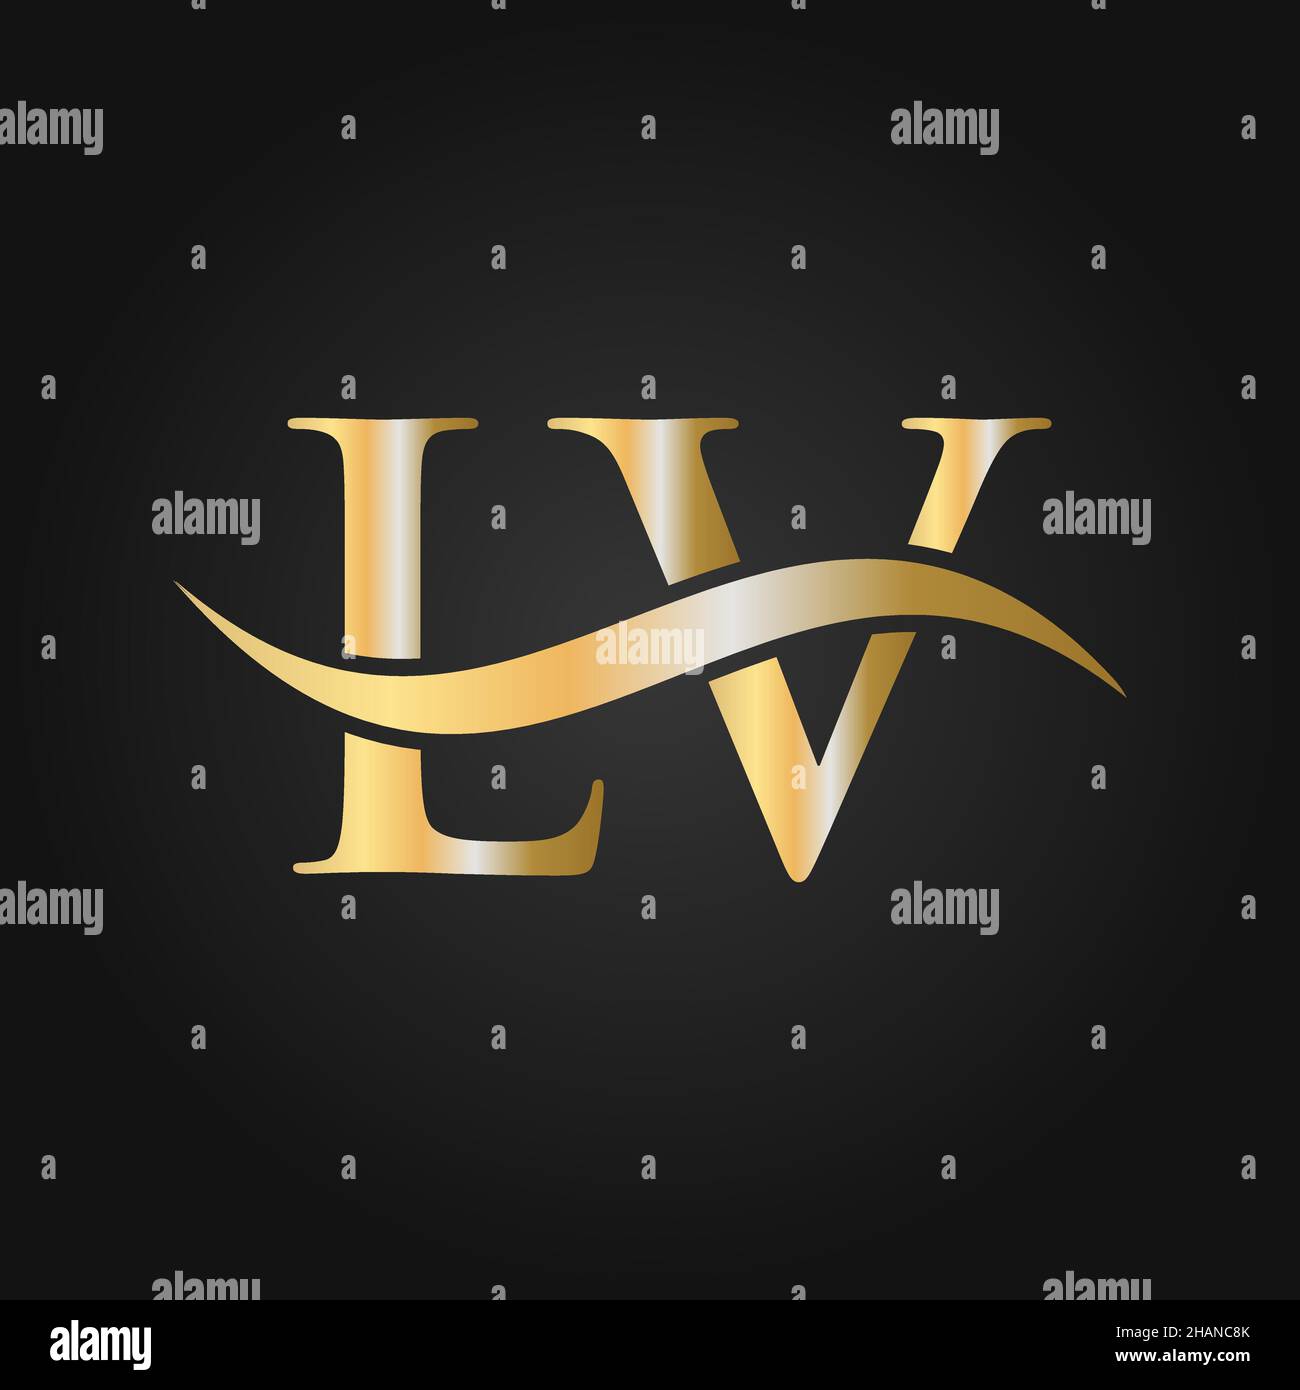 Modèle de logo Letter LV.LV, L V lettre logo Modern, Flat, minimaliste, Business, Company Sign Illustration de Vecteur